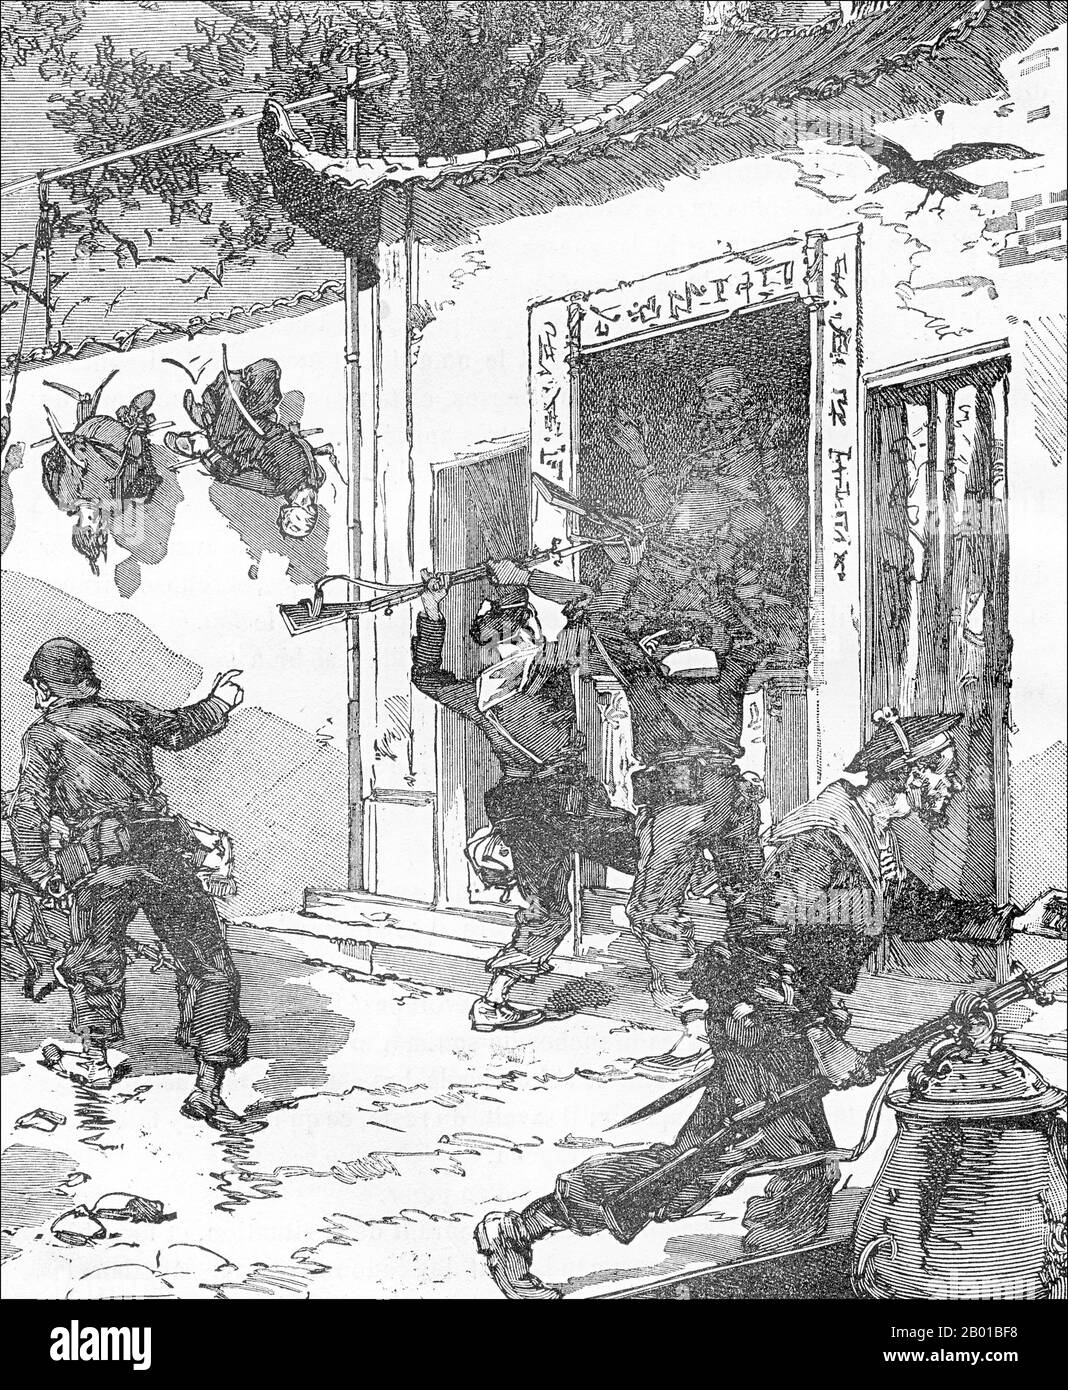 Vietnam/Frankreich: Tonkin-Kampagne - Französische Invasoren erobern Haiduong, 13. August 1883. Lithographie, 1887. Die Gefangennahme von Haiduong war für die Gräueltaten sowohl der Franzosen als auch der Vietnamesen bekannt. Die Franzosen entdeckten, an Haken an den Stadtmauern aufgehängt, die verstümmelten Leichen mehrerer vermisster französischer und vietnamesischer Soldaten des Expeditionskorps. Die toten Soldaten waren eindeutig zu Tode gefoltert worden, und die Franzosen rächten sich, indem sie die verwundeten Vietnamesen mit Bajonett bewehrten. Die Tonkin-Kampagne (französisch: Campagne du Tonkin) war ein bewaffneter Konflikt, der zwischen 1883 und 1886 geführt wurde. Stockfoto